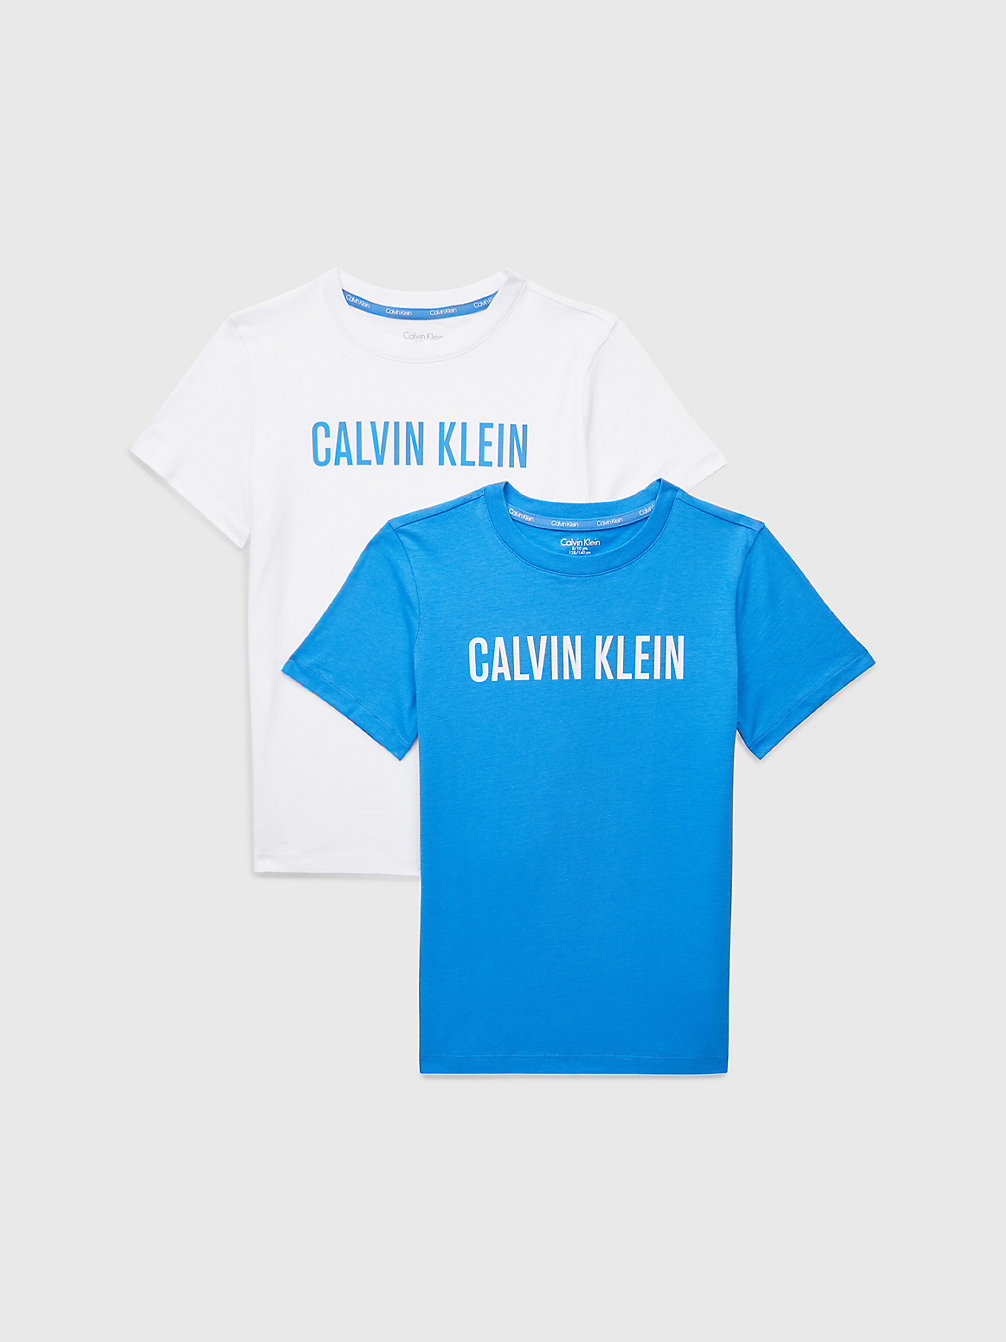 ELECTRICAQUA/PVHWHITE Lot De 2 T-Shirts Pour Garçon - Intense Power undefined boys Calvin Klein